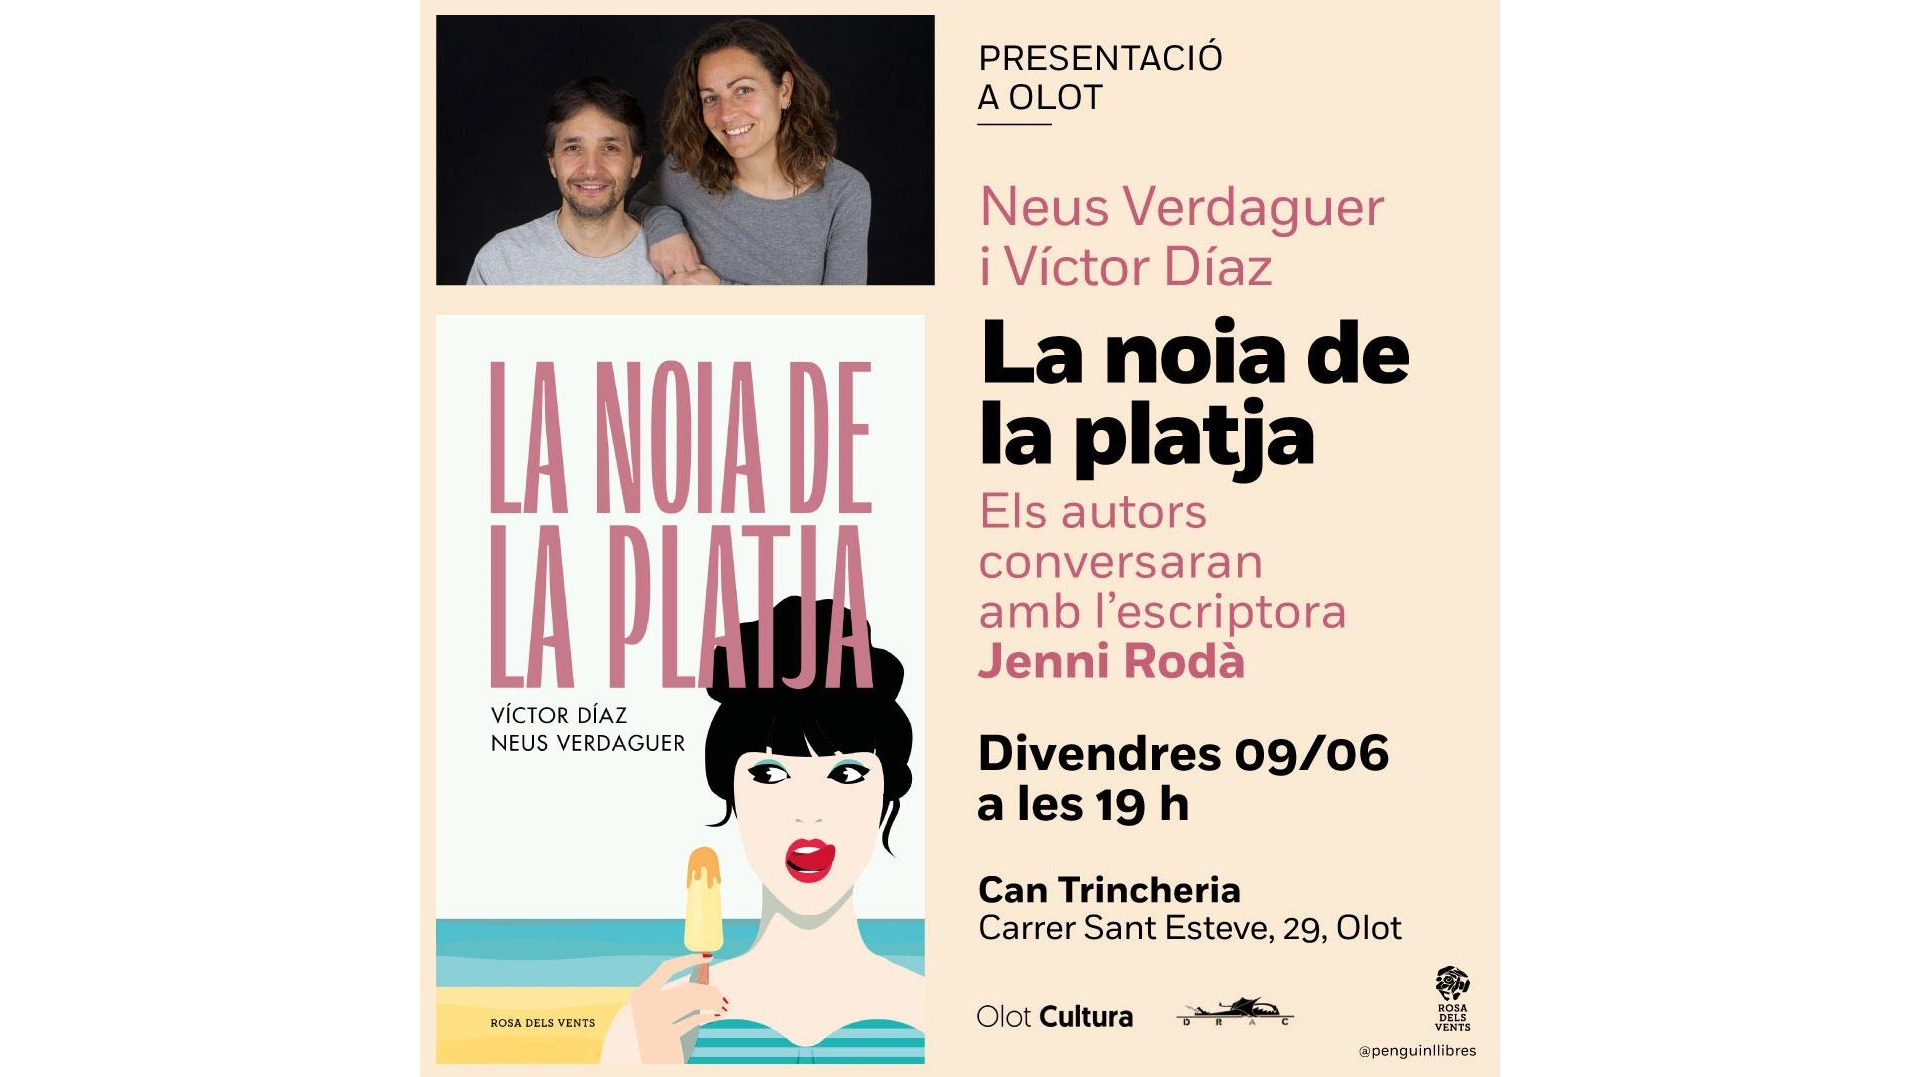 Presentació del llibre ‘La noia de la platja’ de Neus Verdaguer i Víctor Díaz